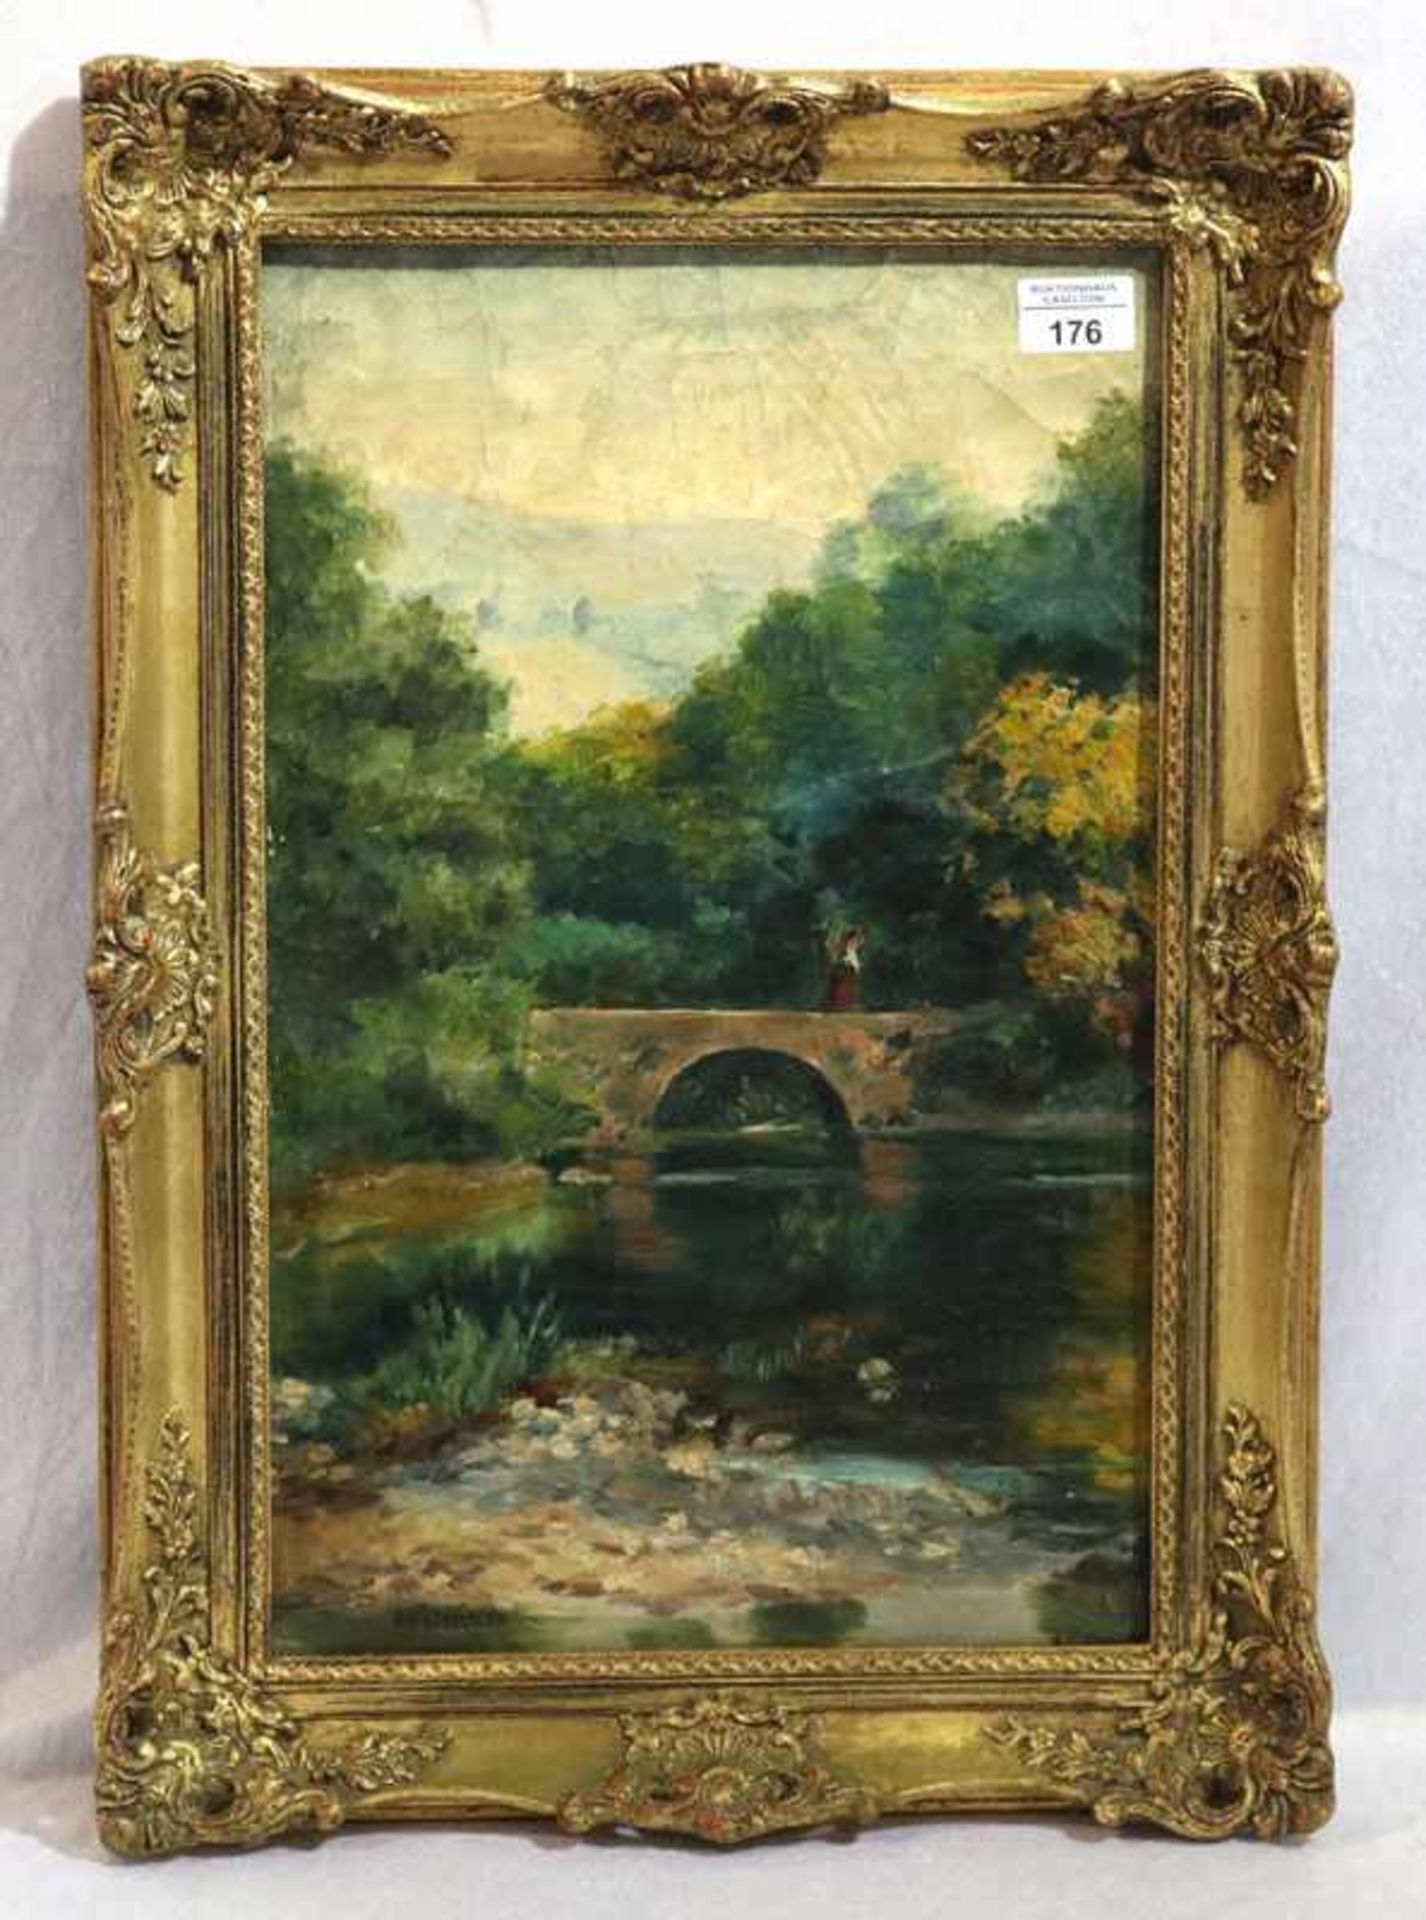 Gemälde ÖL/Malkarton 'Flußlauf mit Brücke', signiert F. D. Schulze, gerahmt, Rahmen leicht berieben,